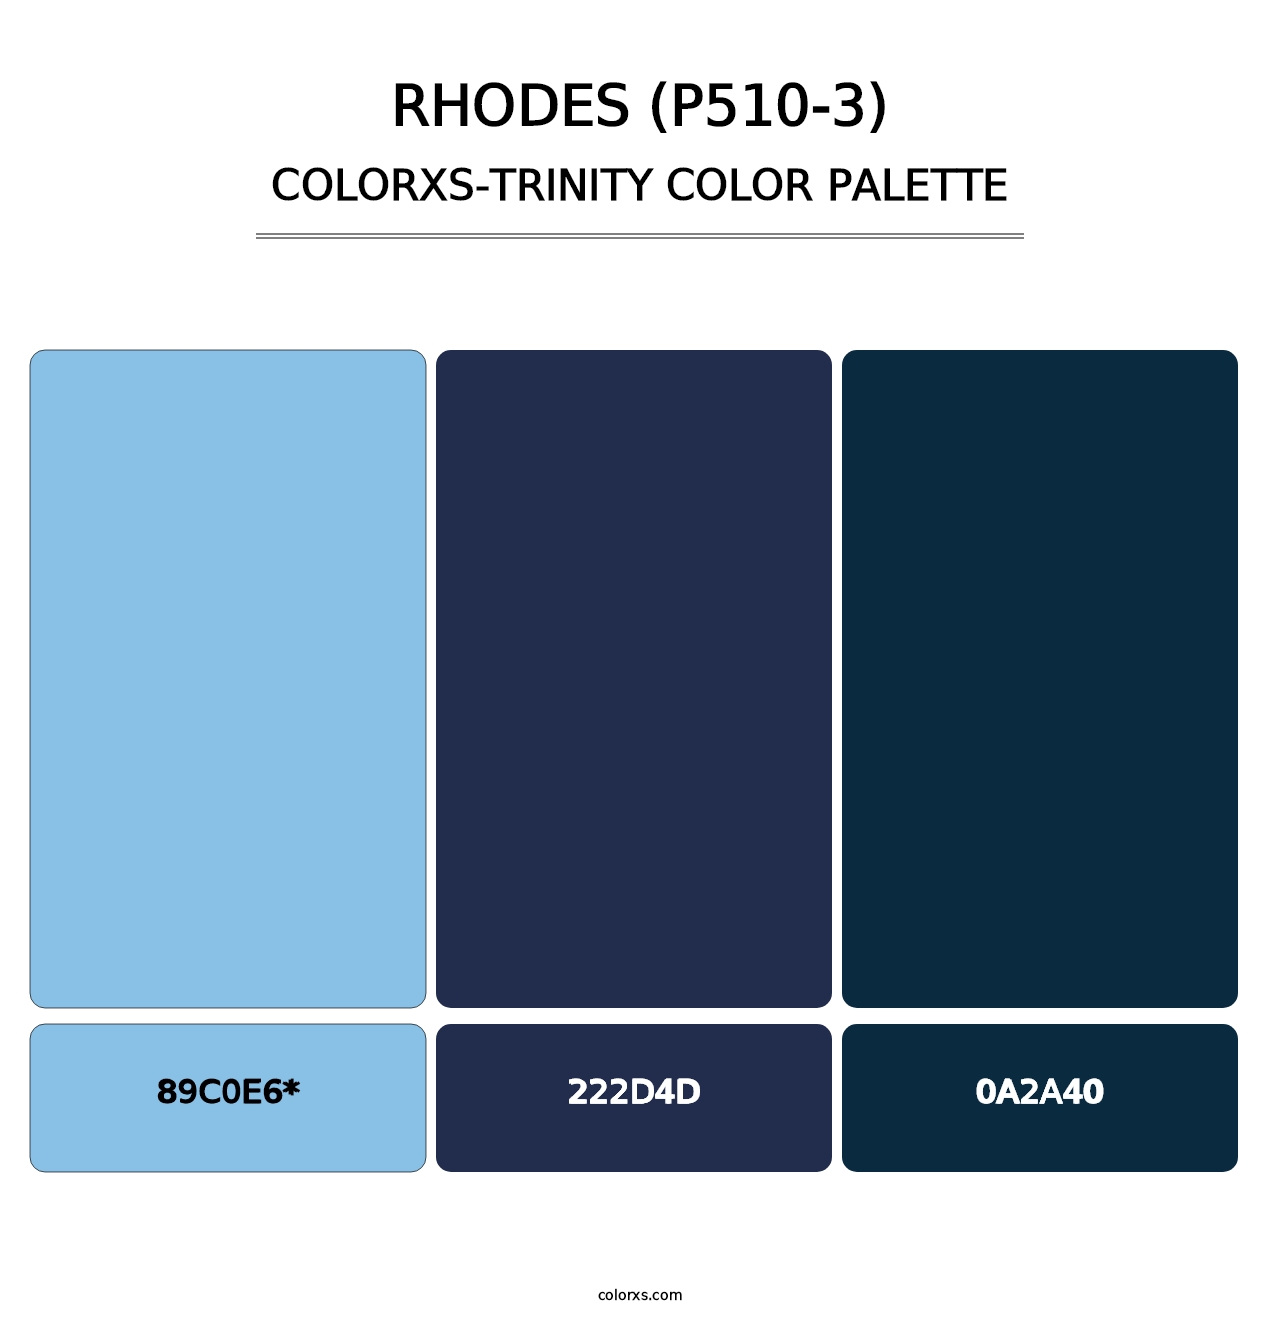 Rhodes (P510-3) - Colorxs Trinity Palette